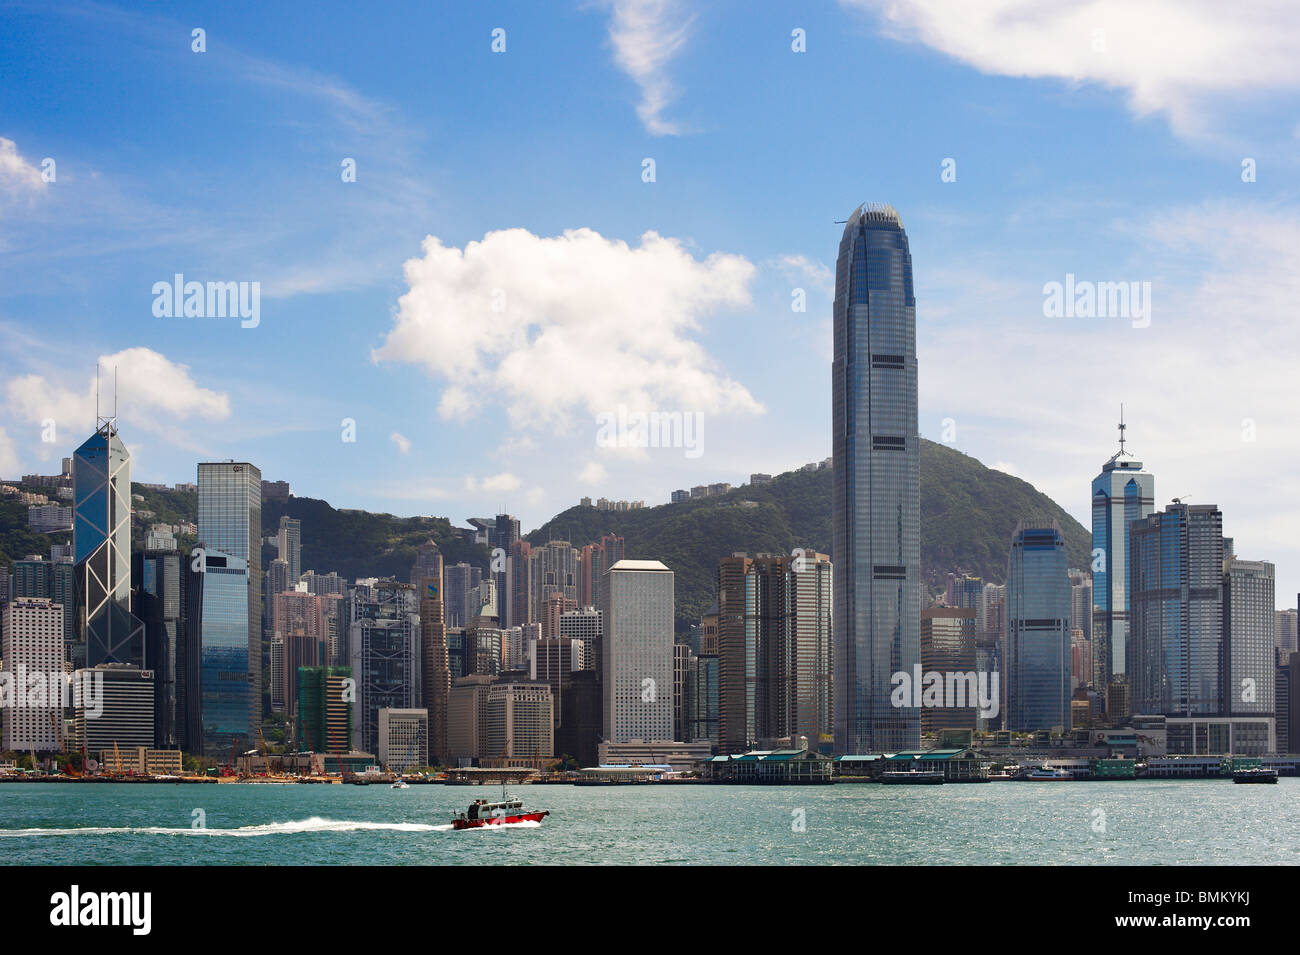 Hong Kong vue montrant le port de Victoria sur fond de ciel bleu avec l'International Finance Centre dominent l'image. Banque D'Images